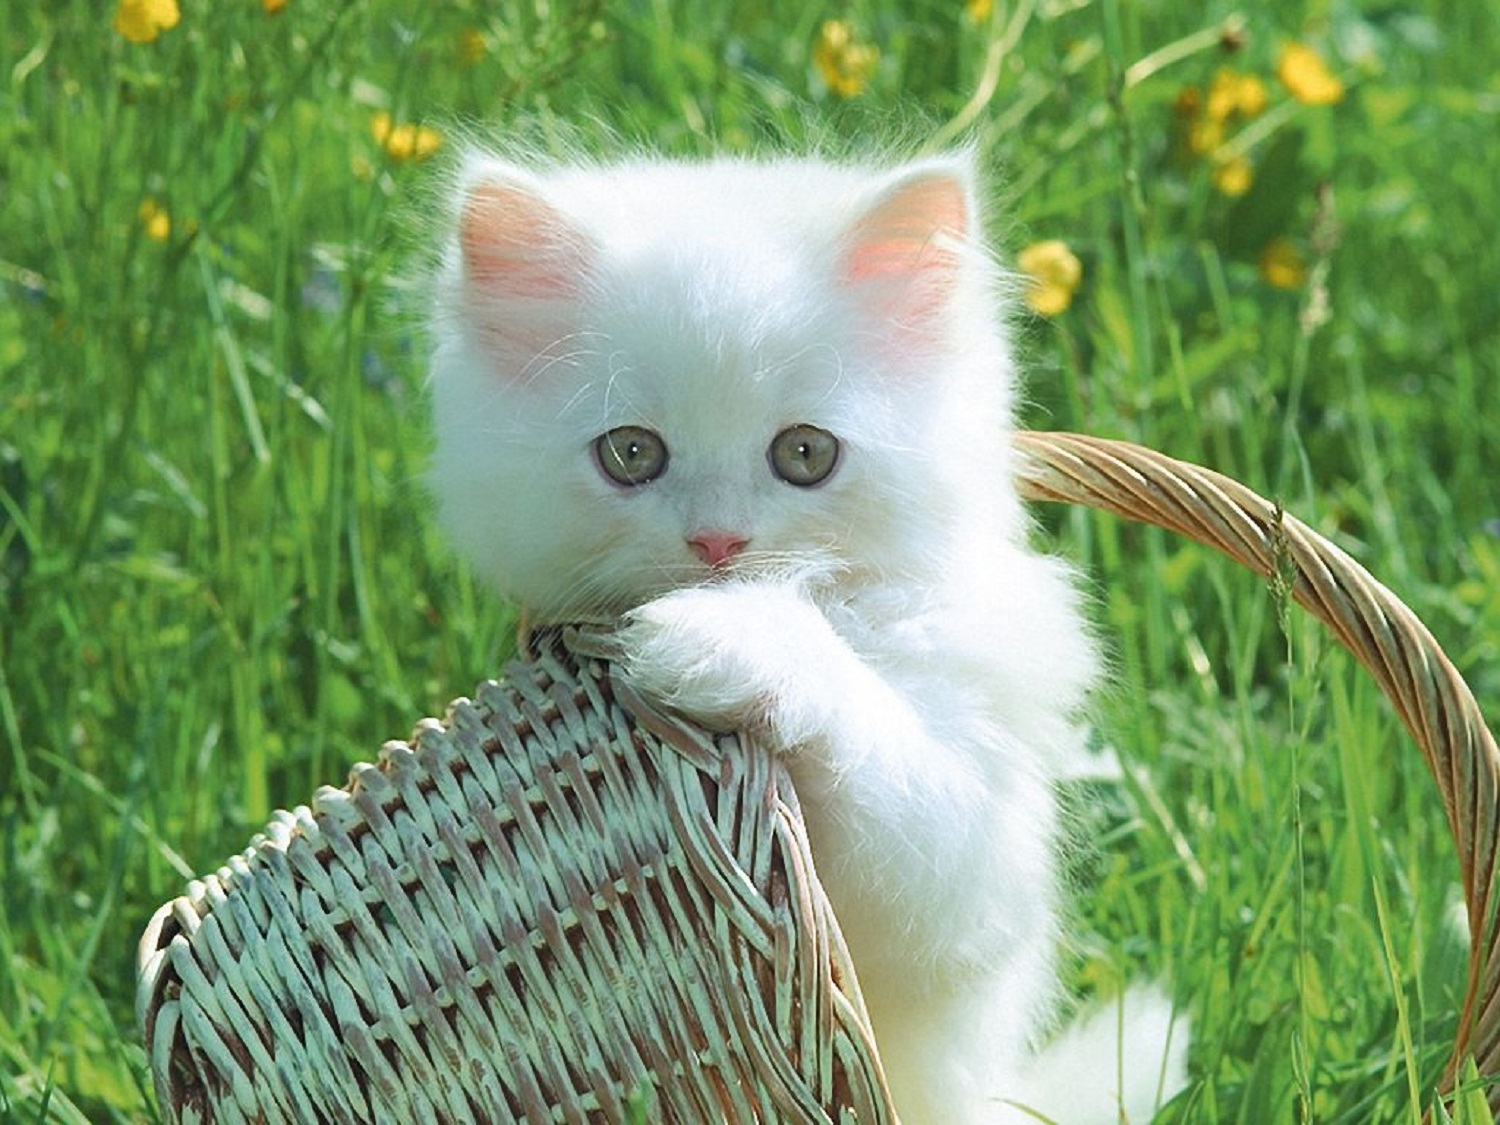 Fotos de los gatos mas bonitos - Imagui